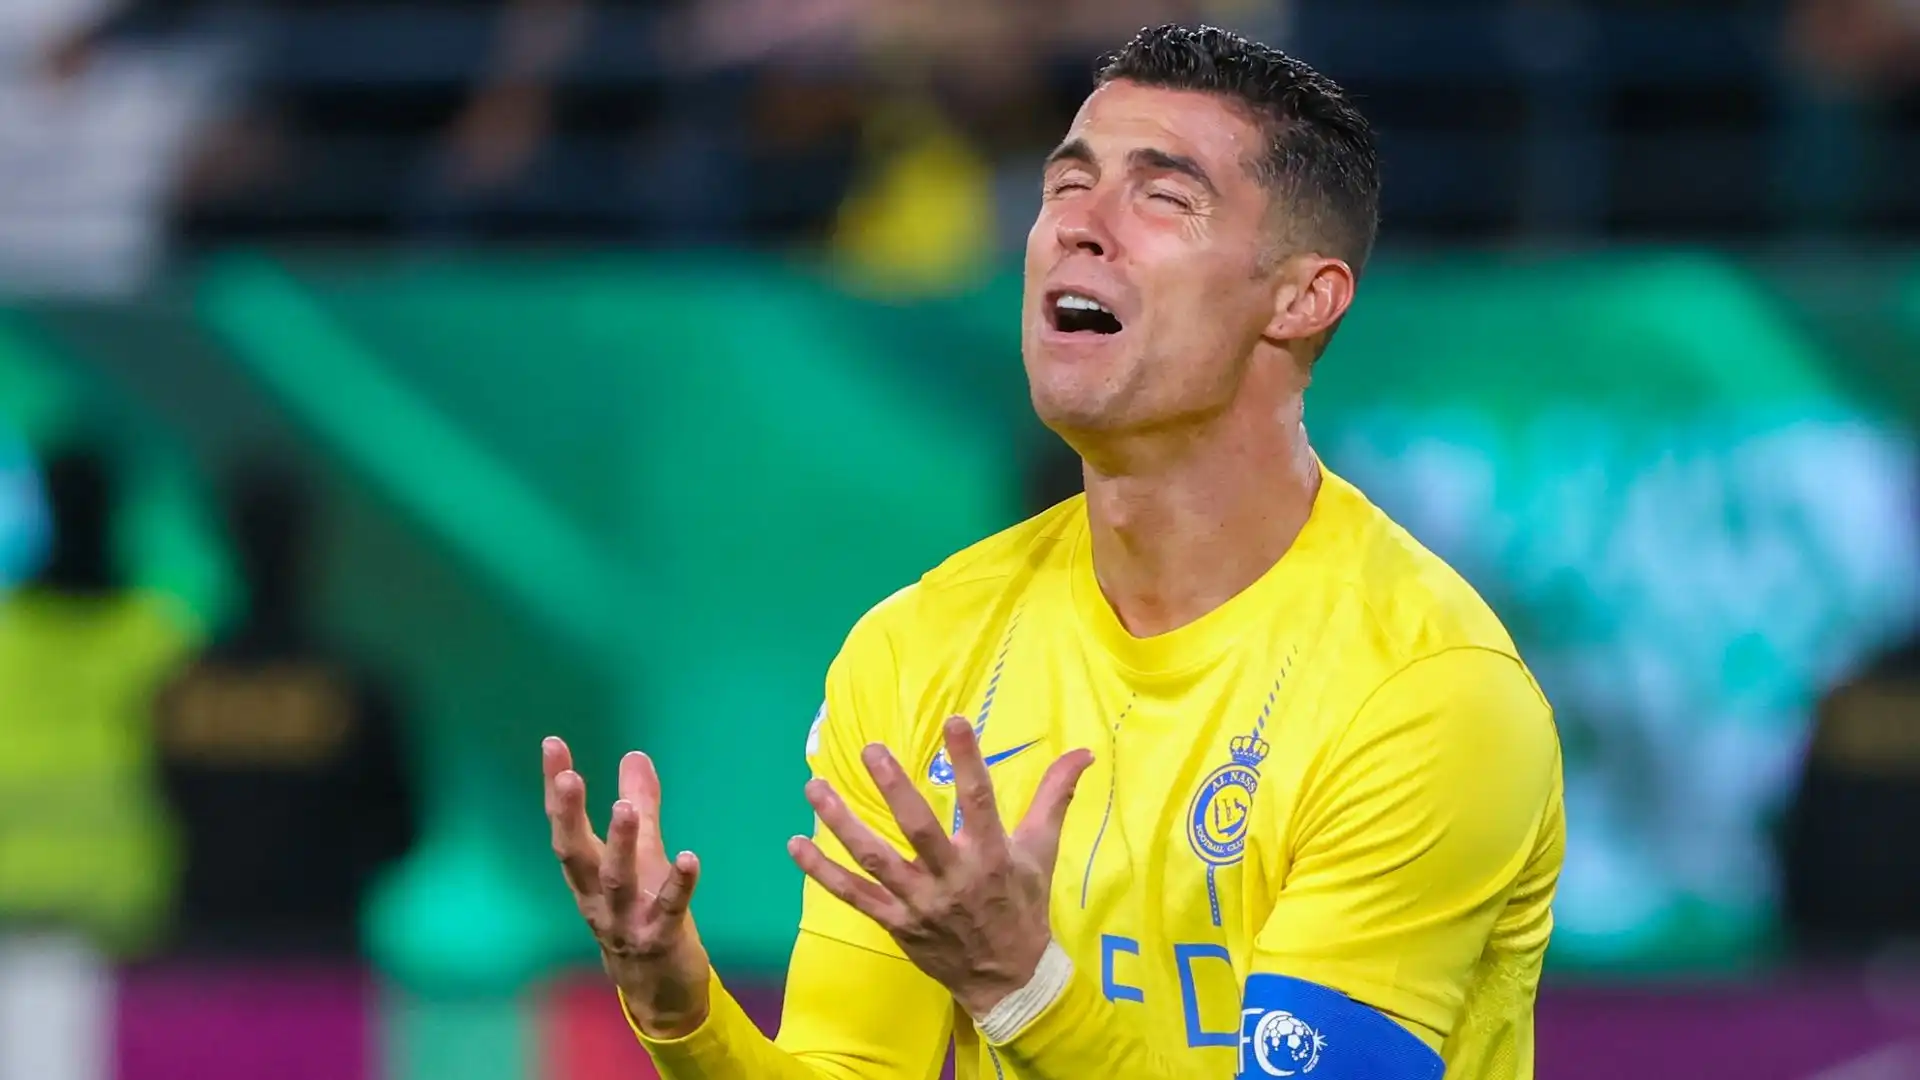 L'Al-Nassr di Cristiano Ronaldo è stato eliminato dall'AFC Champions League